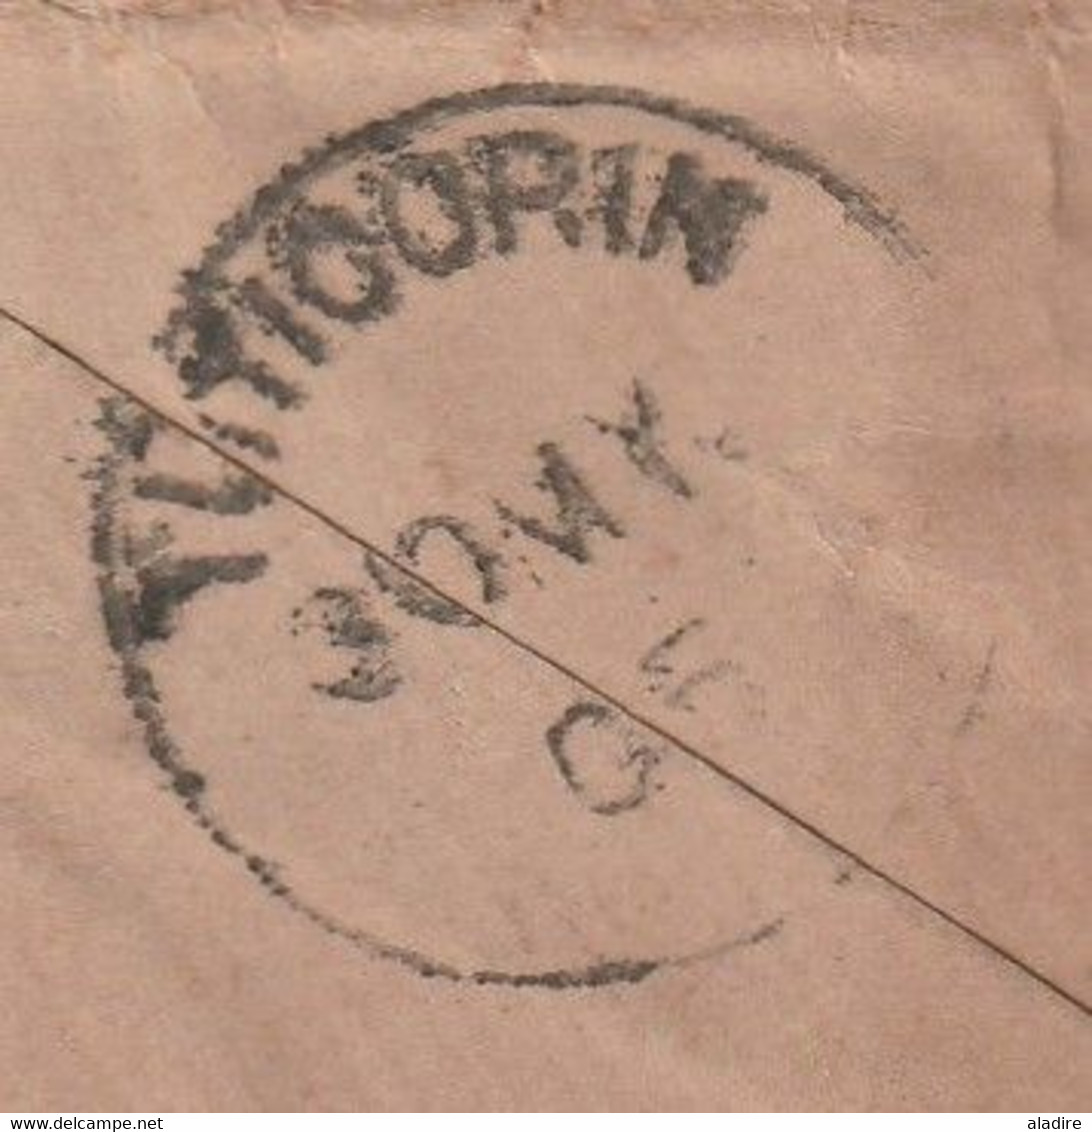 1905 - 25 C Groupe Indochine Sur Enveloppe De Saigon Central Vers Madura Via Colombo, Ceylan - Lettres & Documents